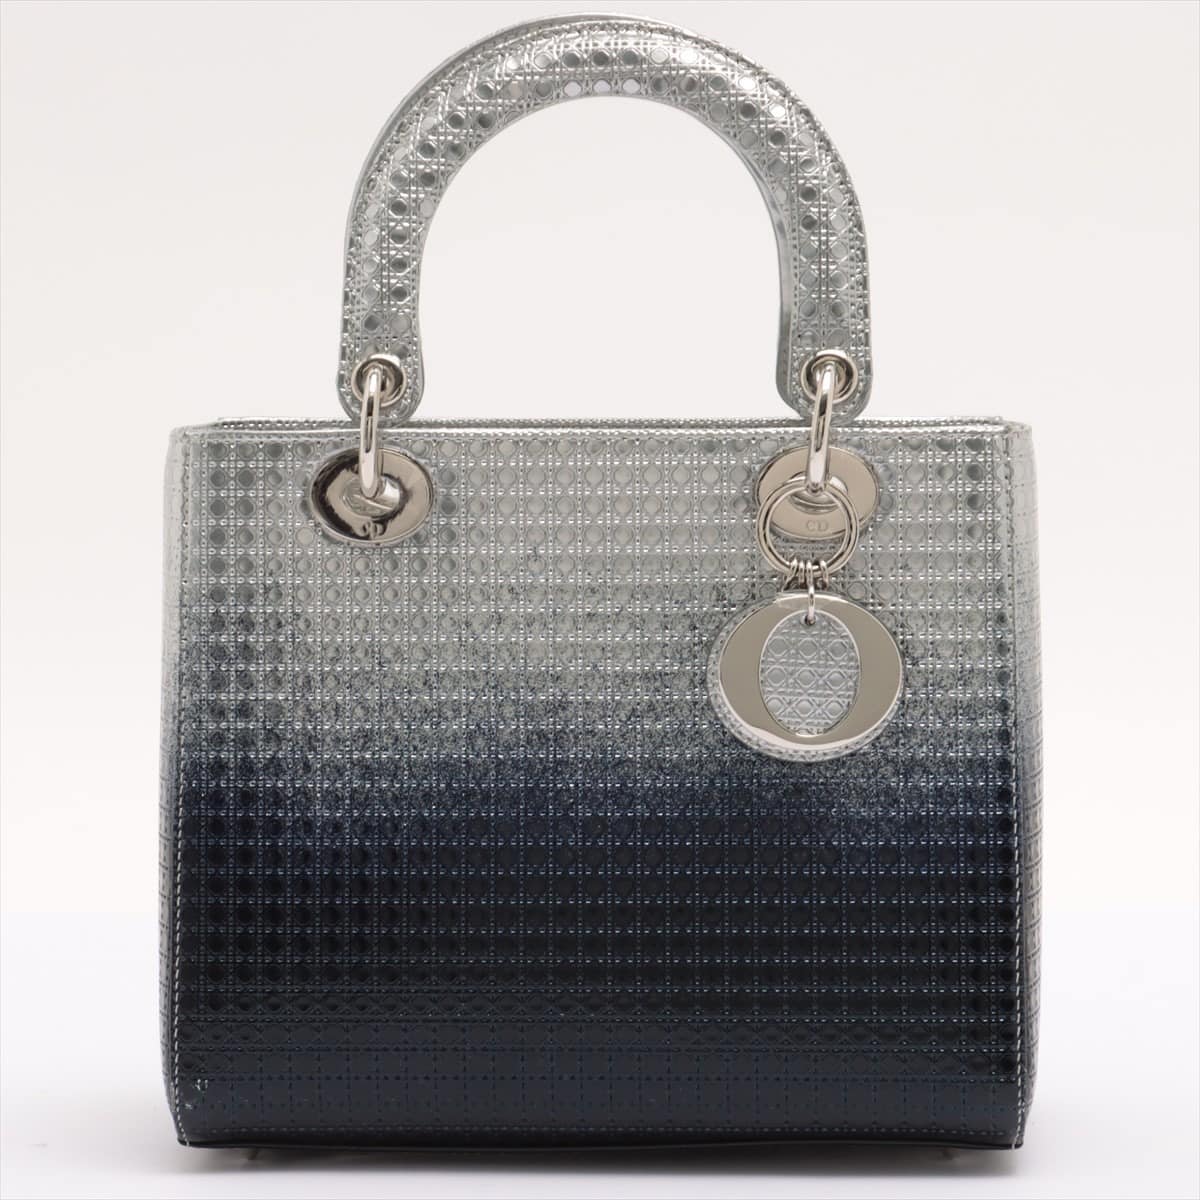 Christian Dior Lady Dior Leather 2way handbag Silver